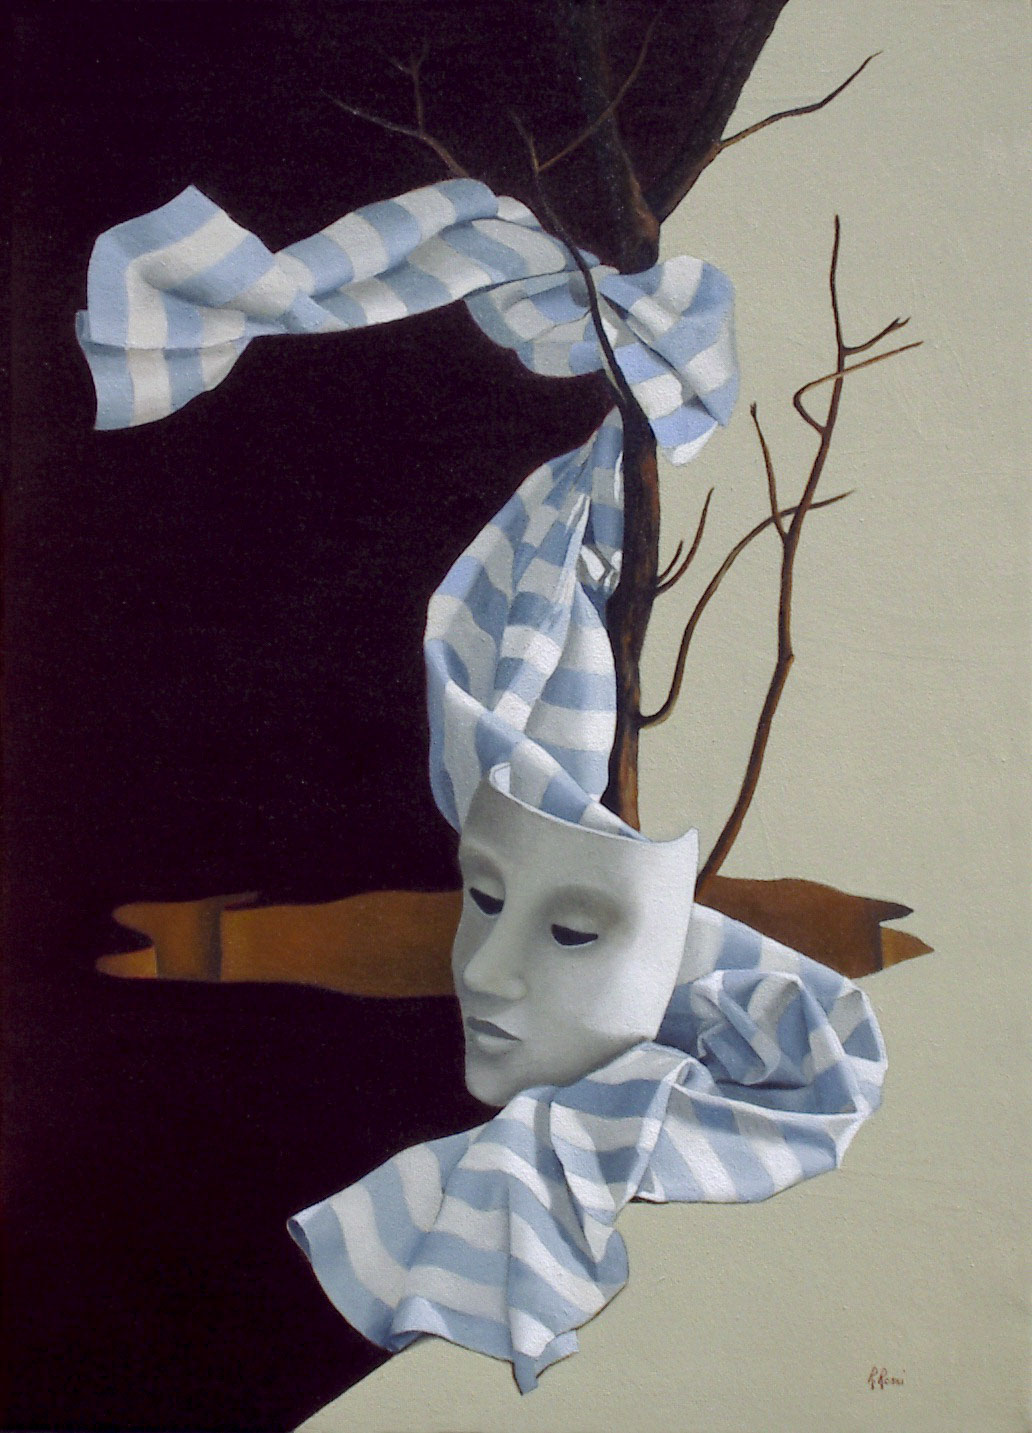 2005 roberta rossi – La Maschera Della Vita – olio su tela – 70 x 50